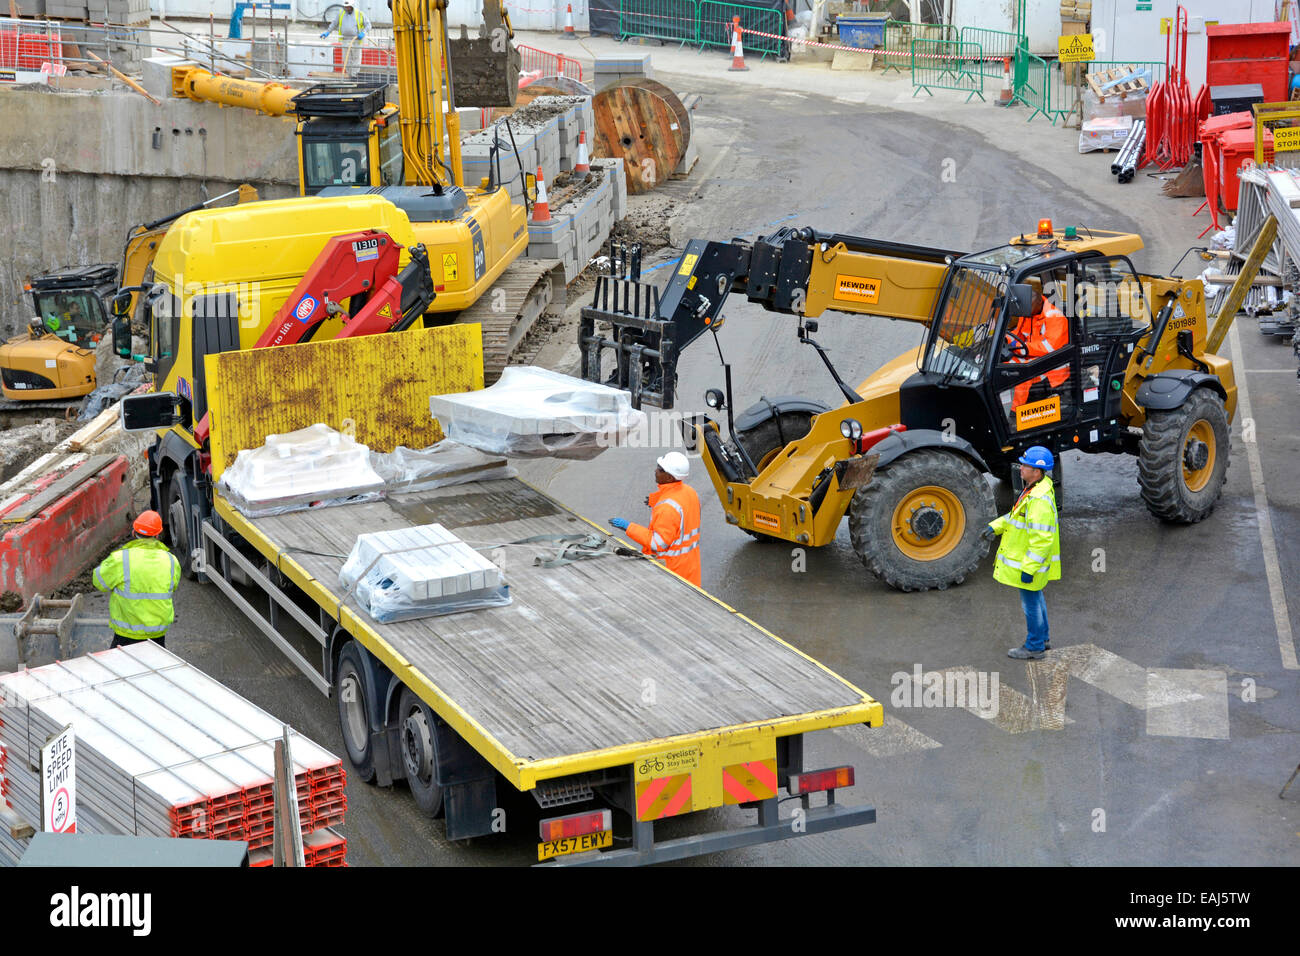 Vue aérienne bâtiment chantier de construction chariot élévateur à fourche déchargement camion camion livraison camion ouvriers port casque et veste haute visibilité Londres Royaume-Uni Banque D'Images